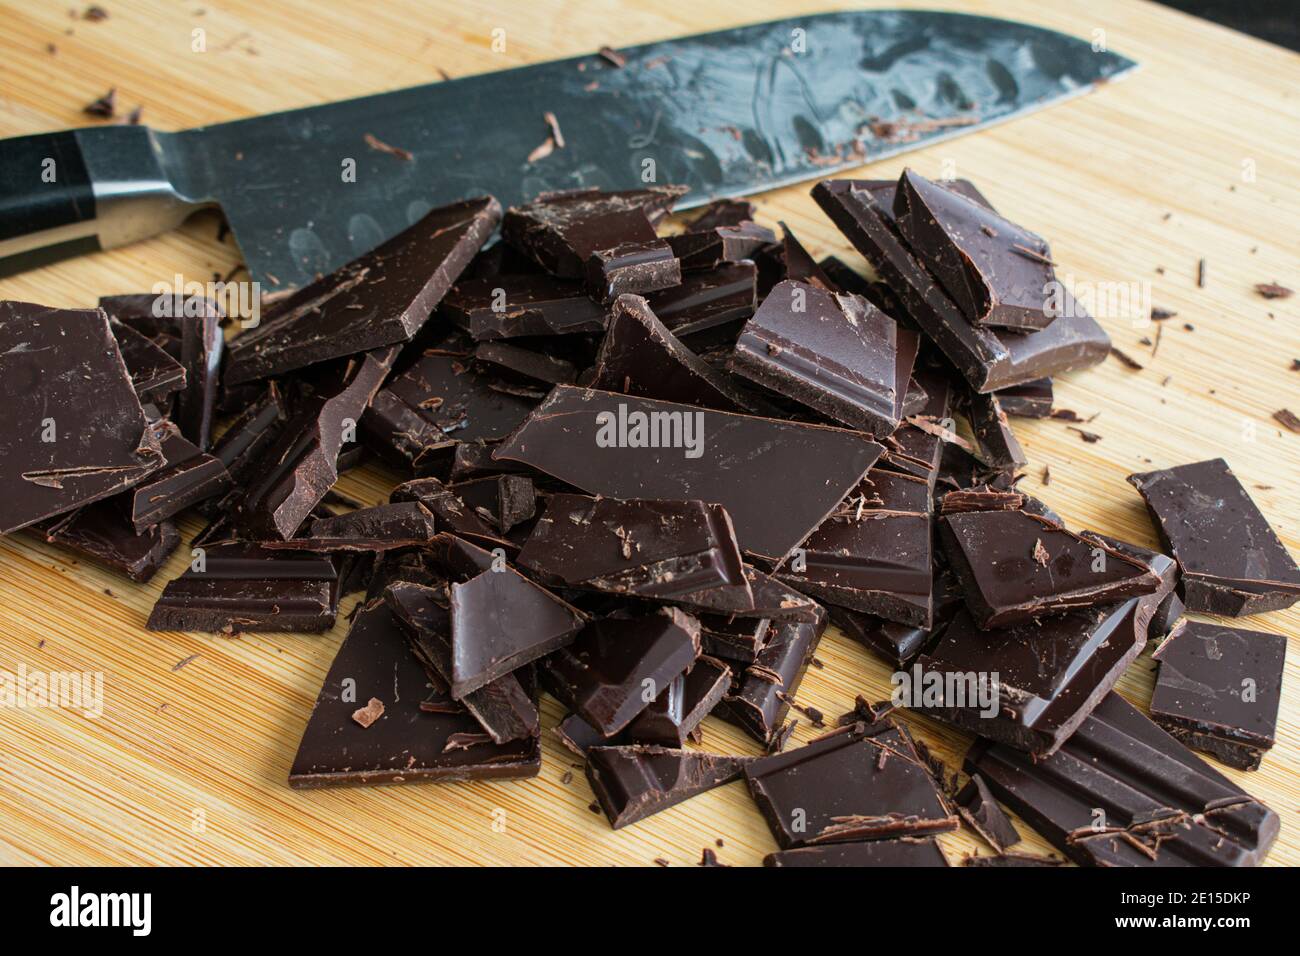 Schneidebrken von Backschokolade: Mit einem Küchenmesser zwei dunkle Schokoriegel in Stücke schneiden Stockfoto